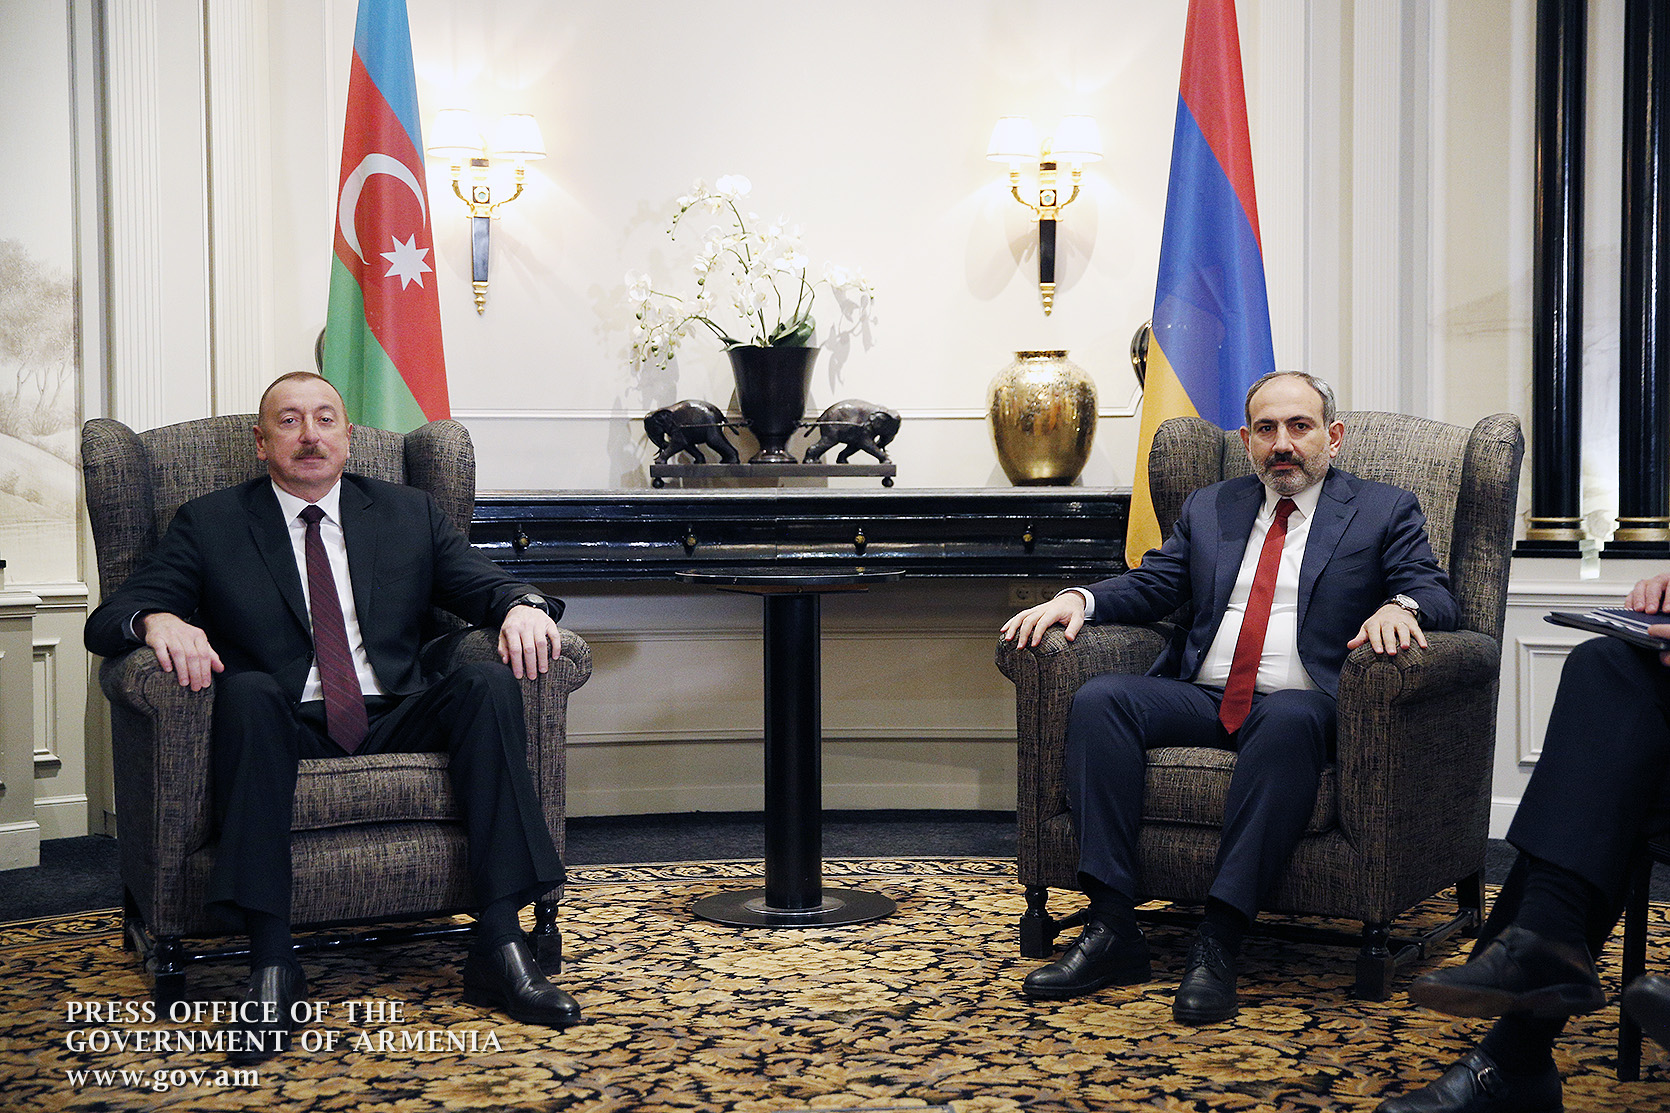 Дан новый старт переговорному процессу: Пашинян и Алиев о венской встрече